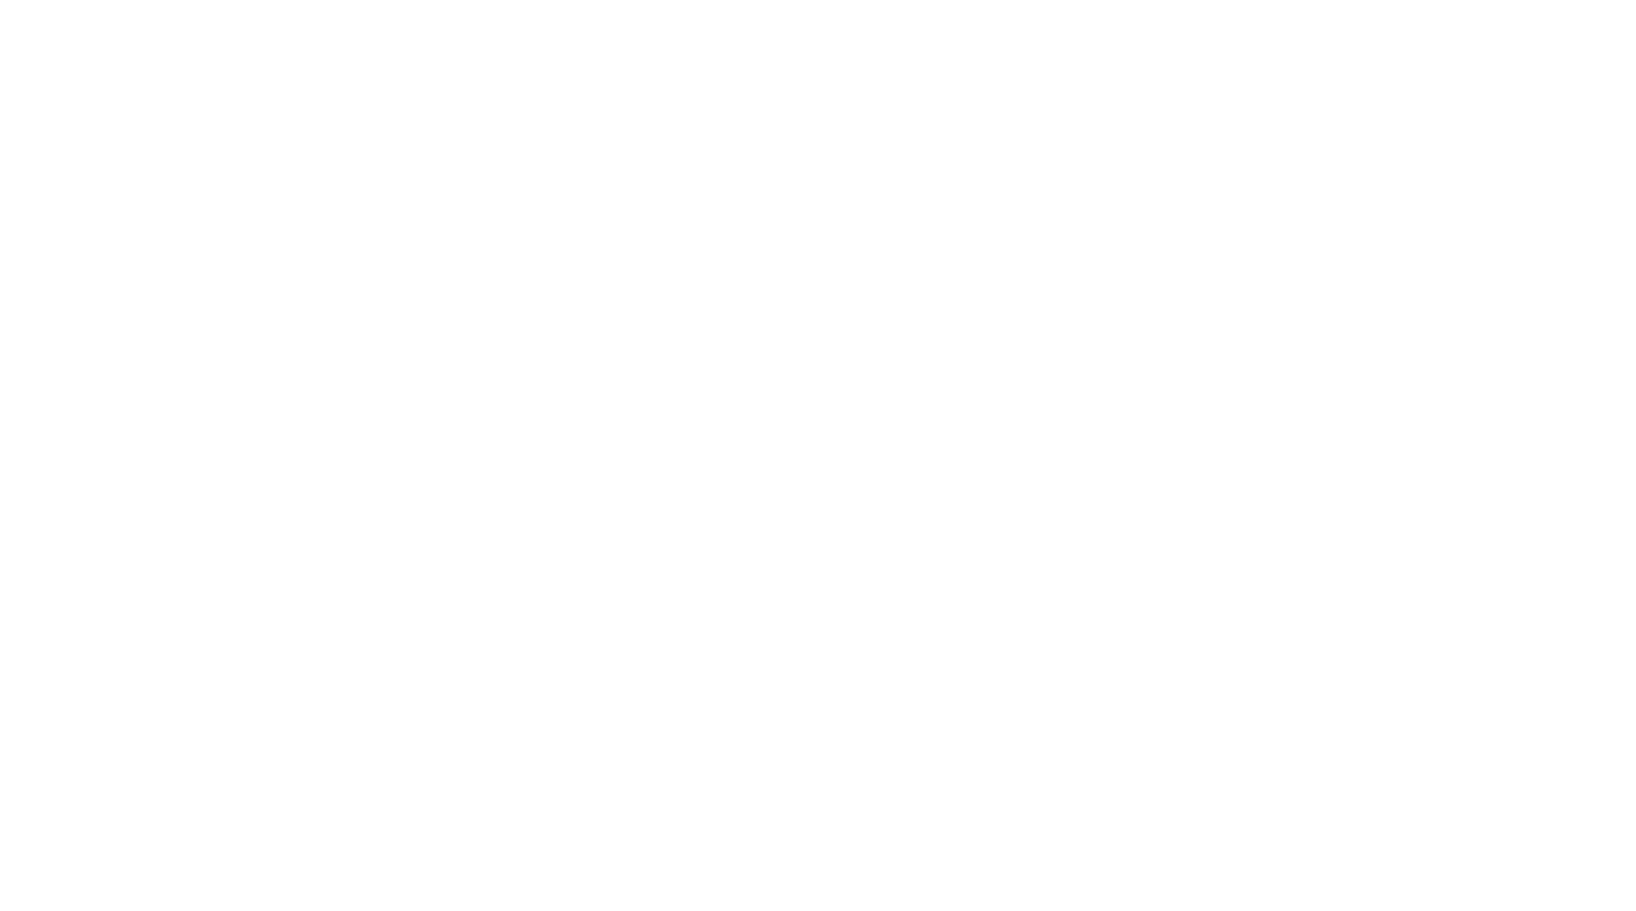 NLA - National Landlords Association - Recognised Supplier